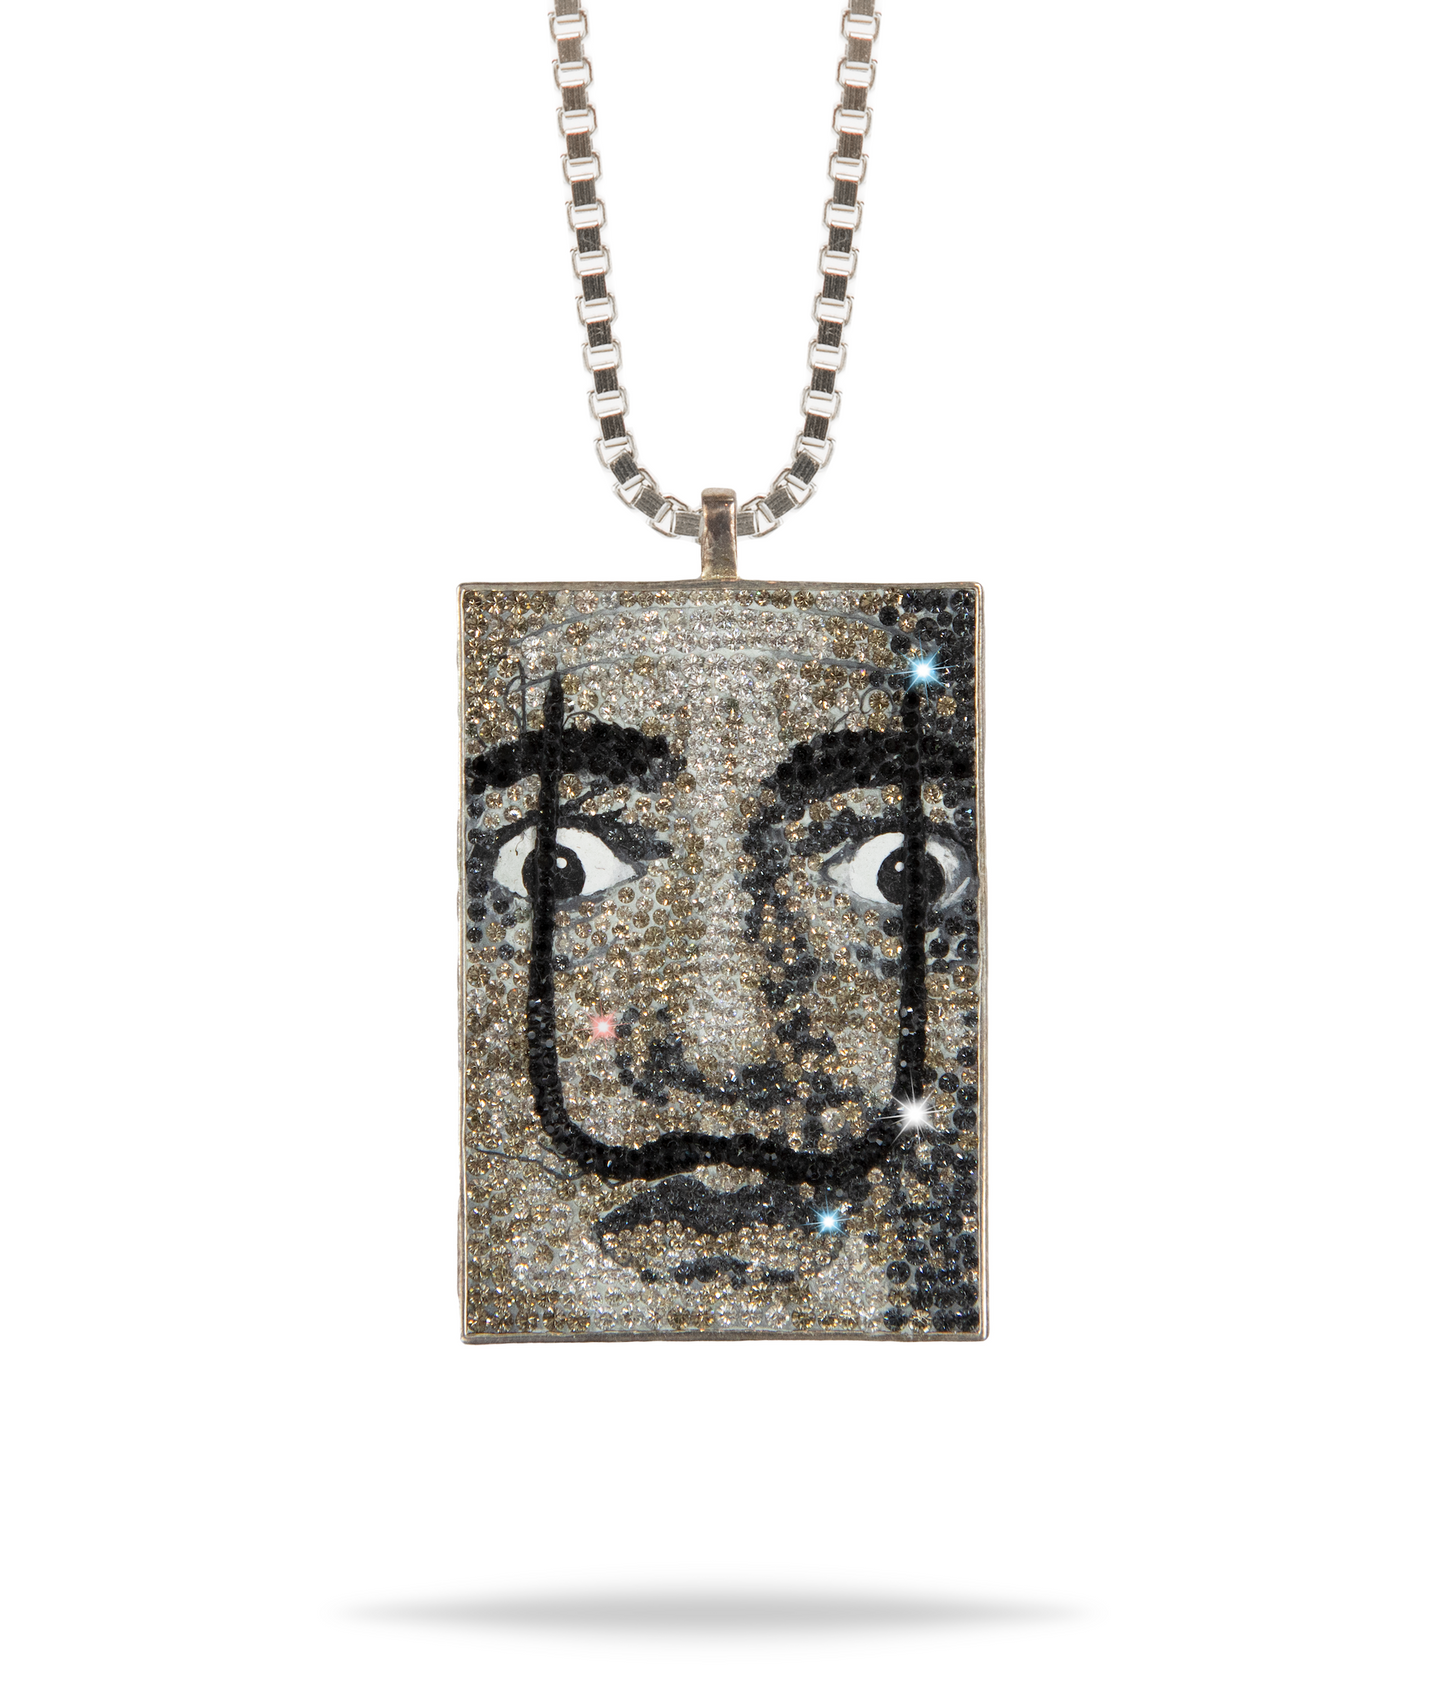 Hommage a Dali [Portrait]